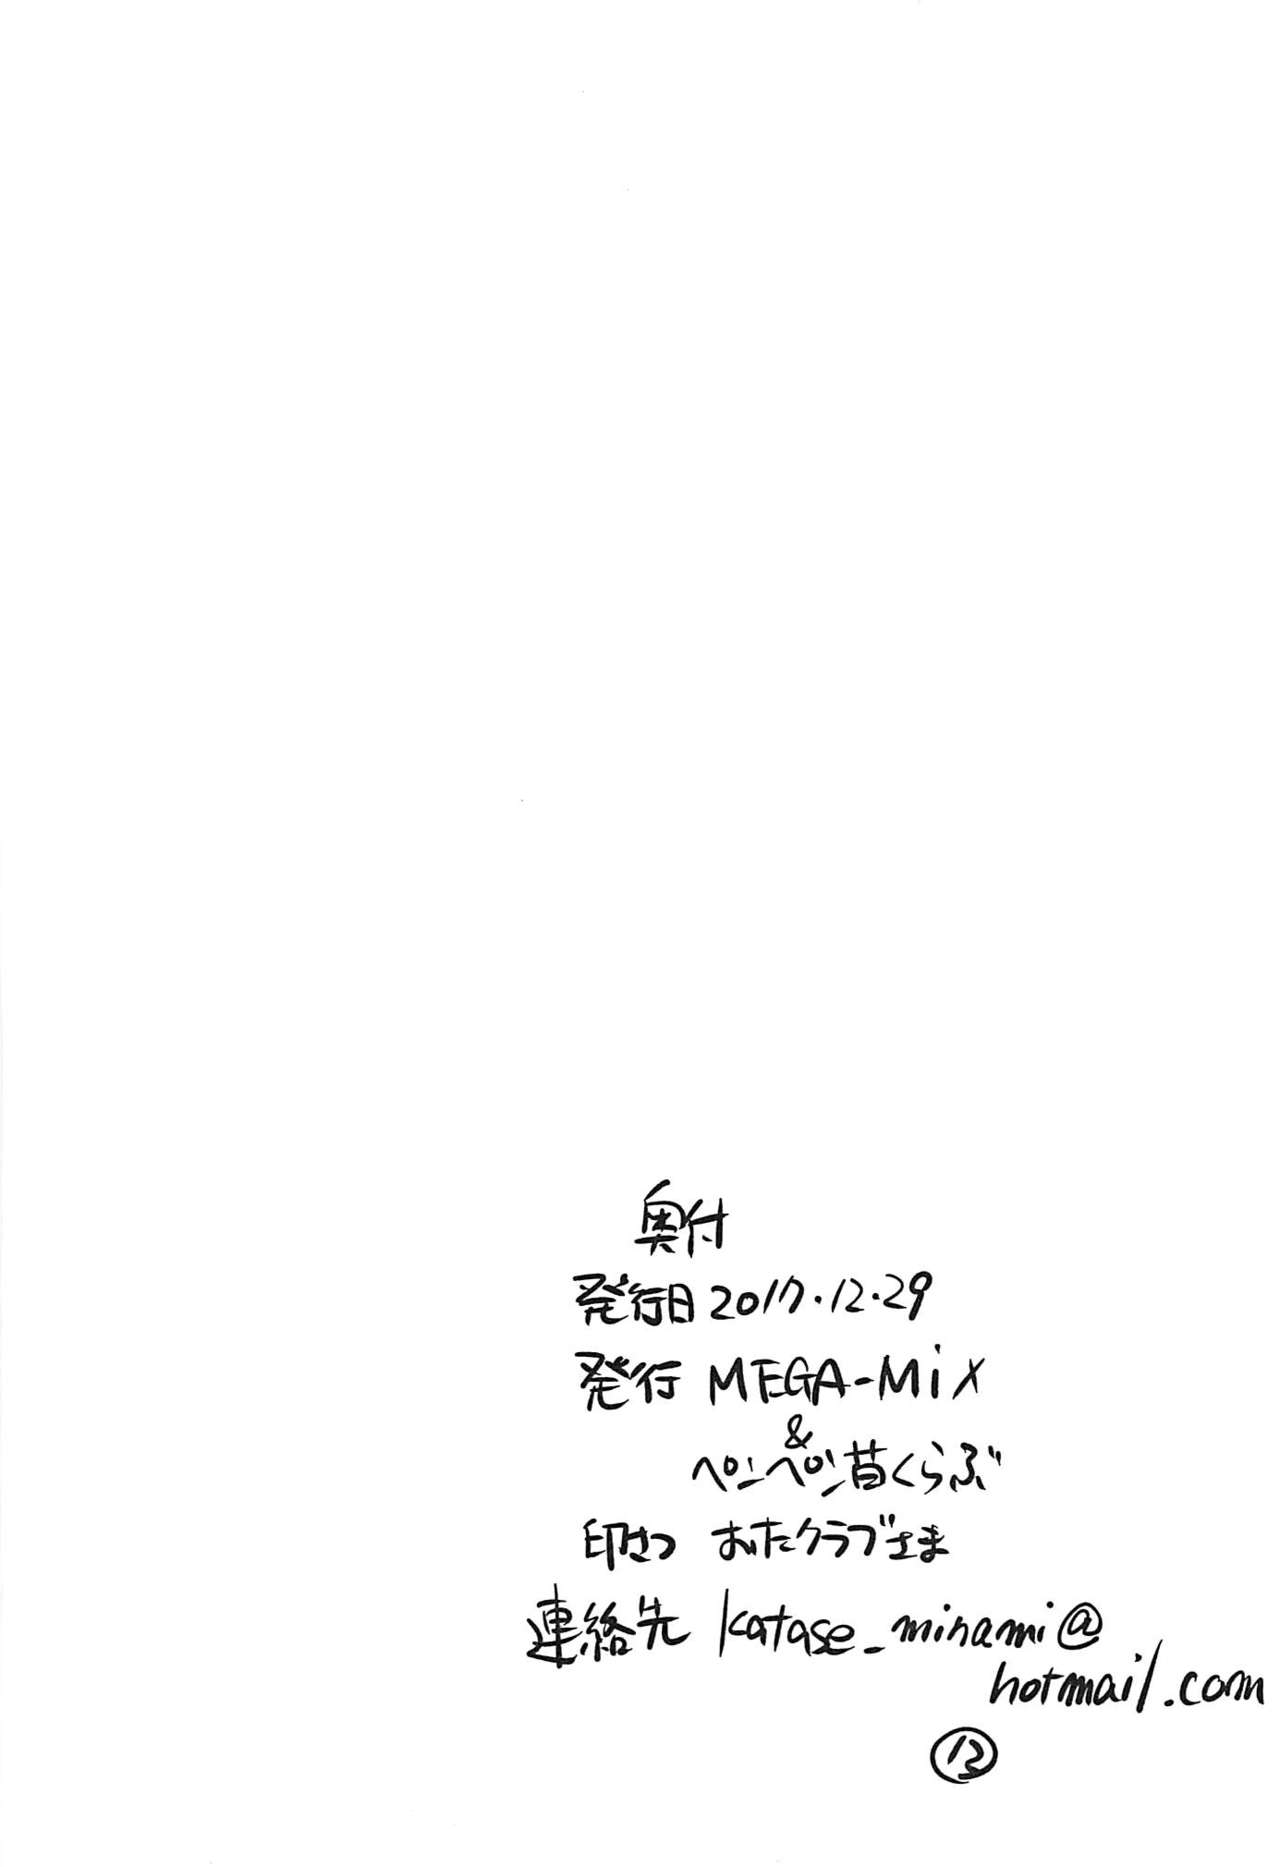 (C93) [MEGA-MIX、ペンペン草くらぶ (猫賀好樹、カタセミナミ)] エレシュキガルようこそカルデアへ! (Fate/Grand Order)